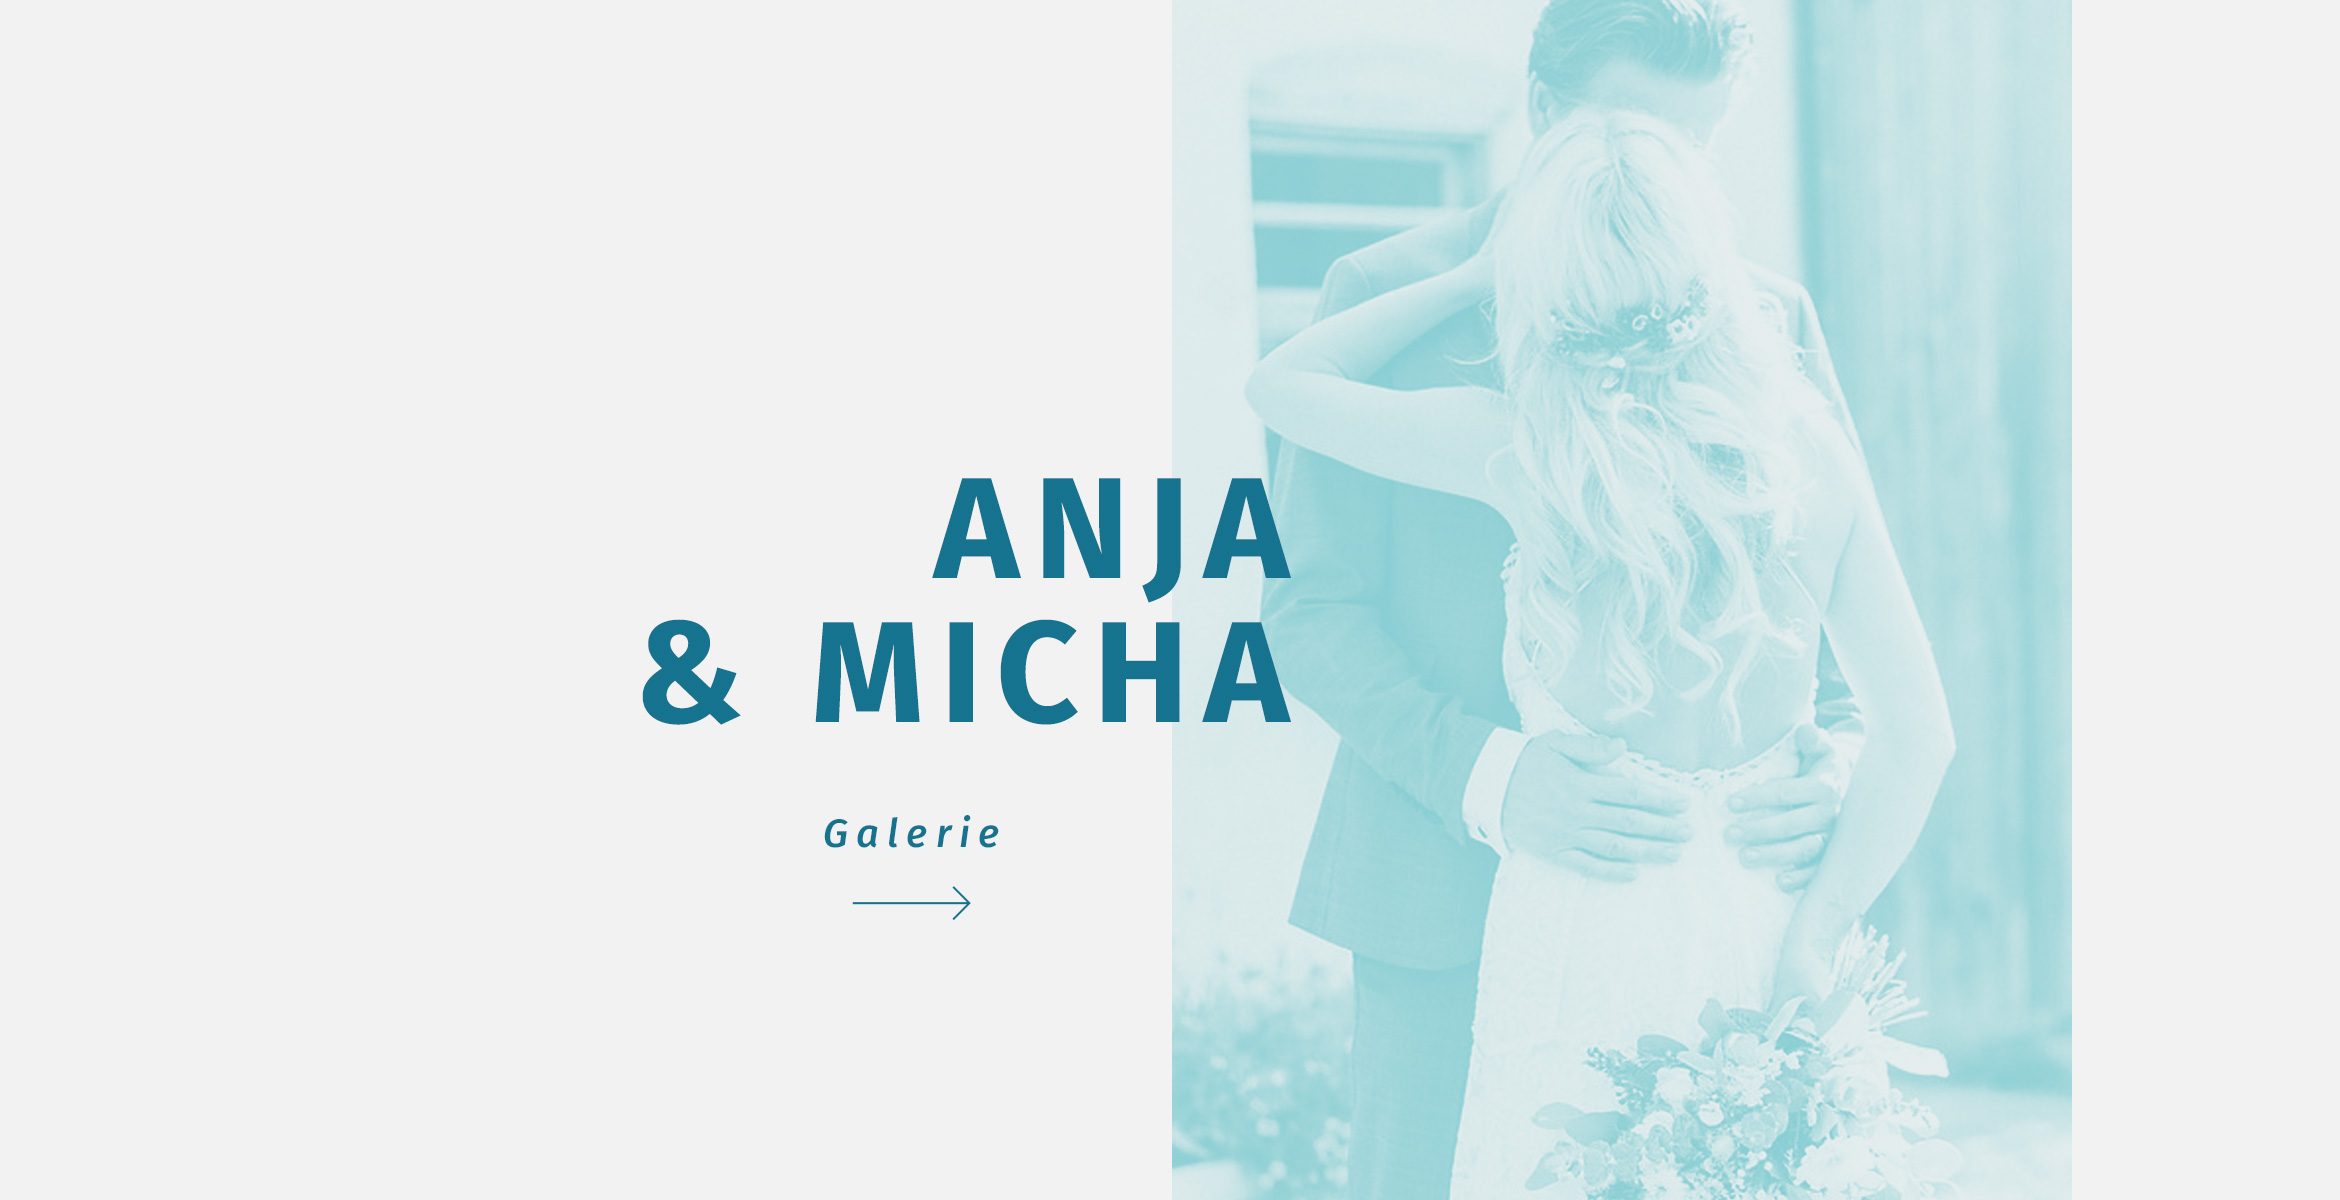 Anja & Micha